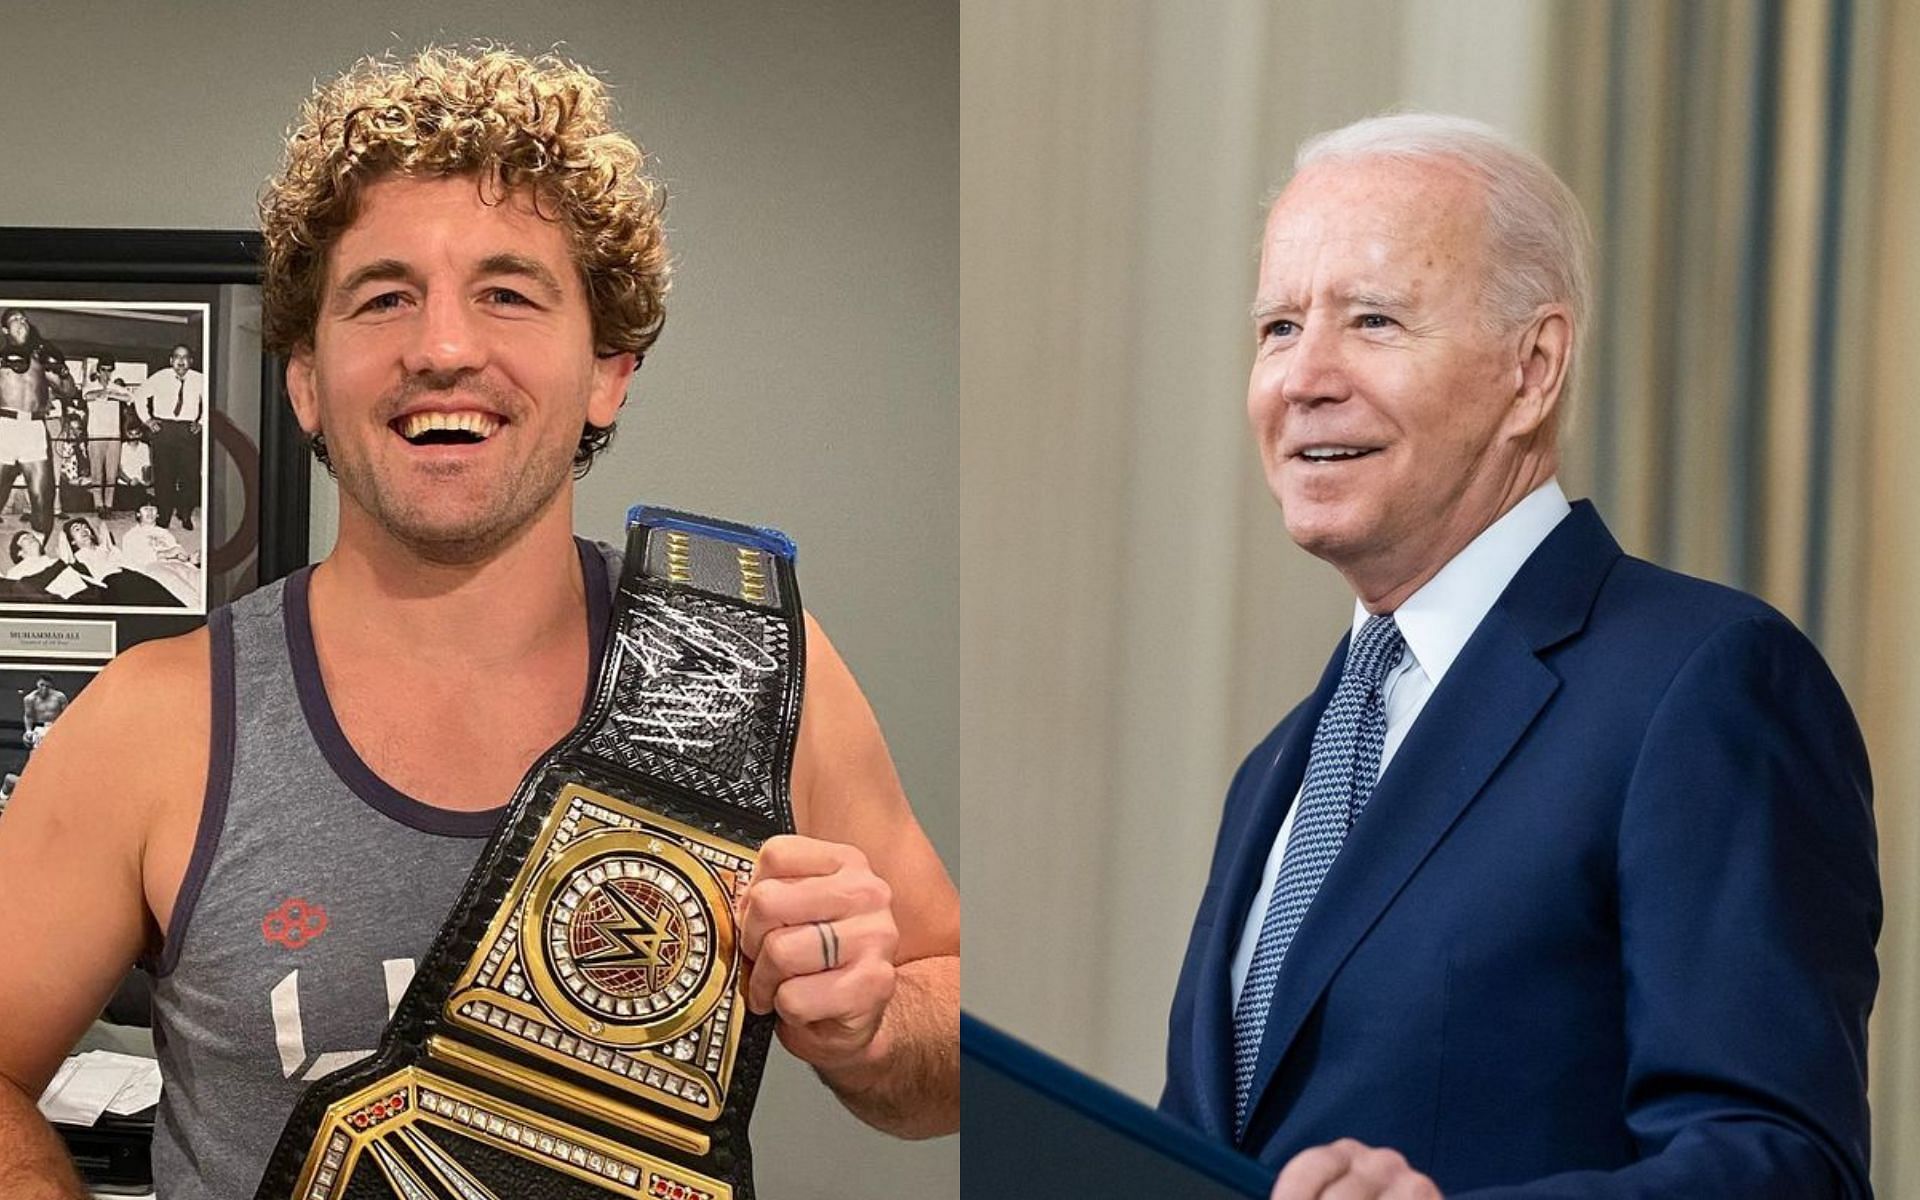 Ben Askren (L) and Joe Biden (R) via Instagram @benaskren and @joebiden